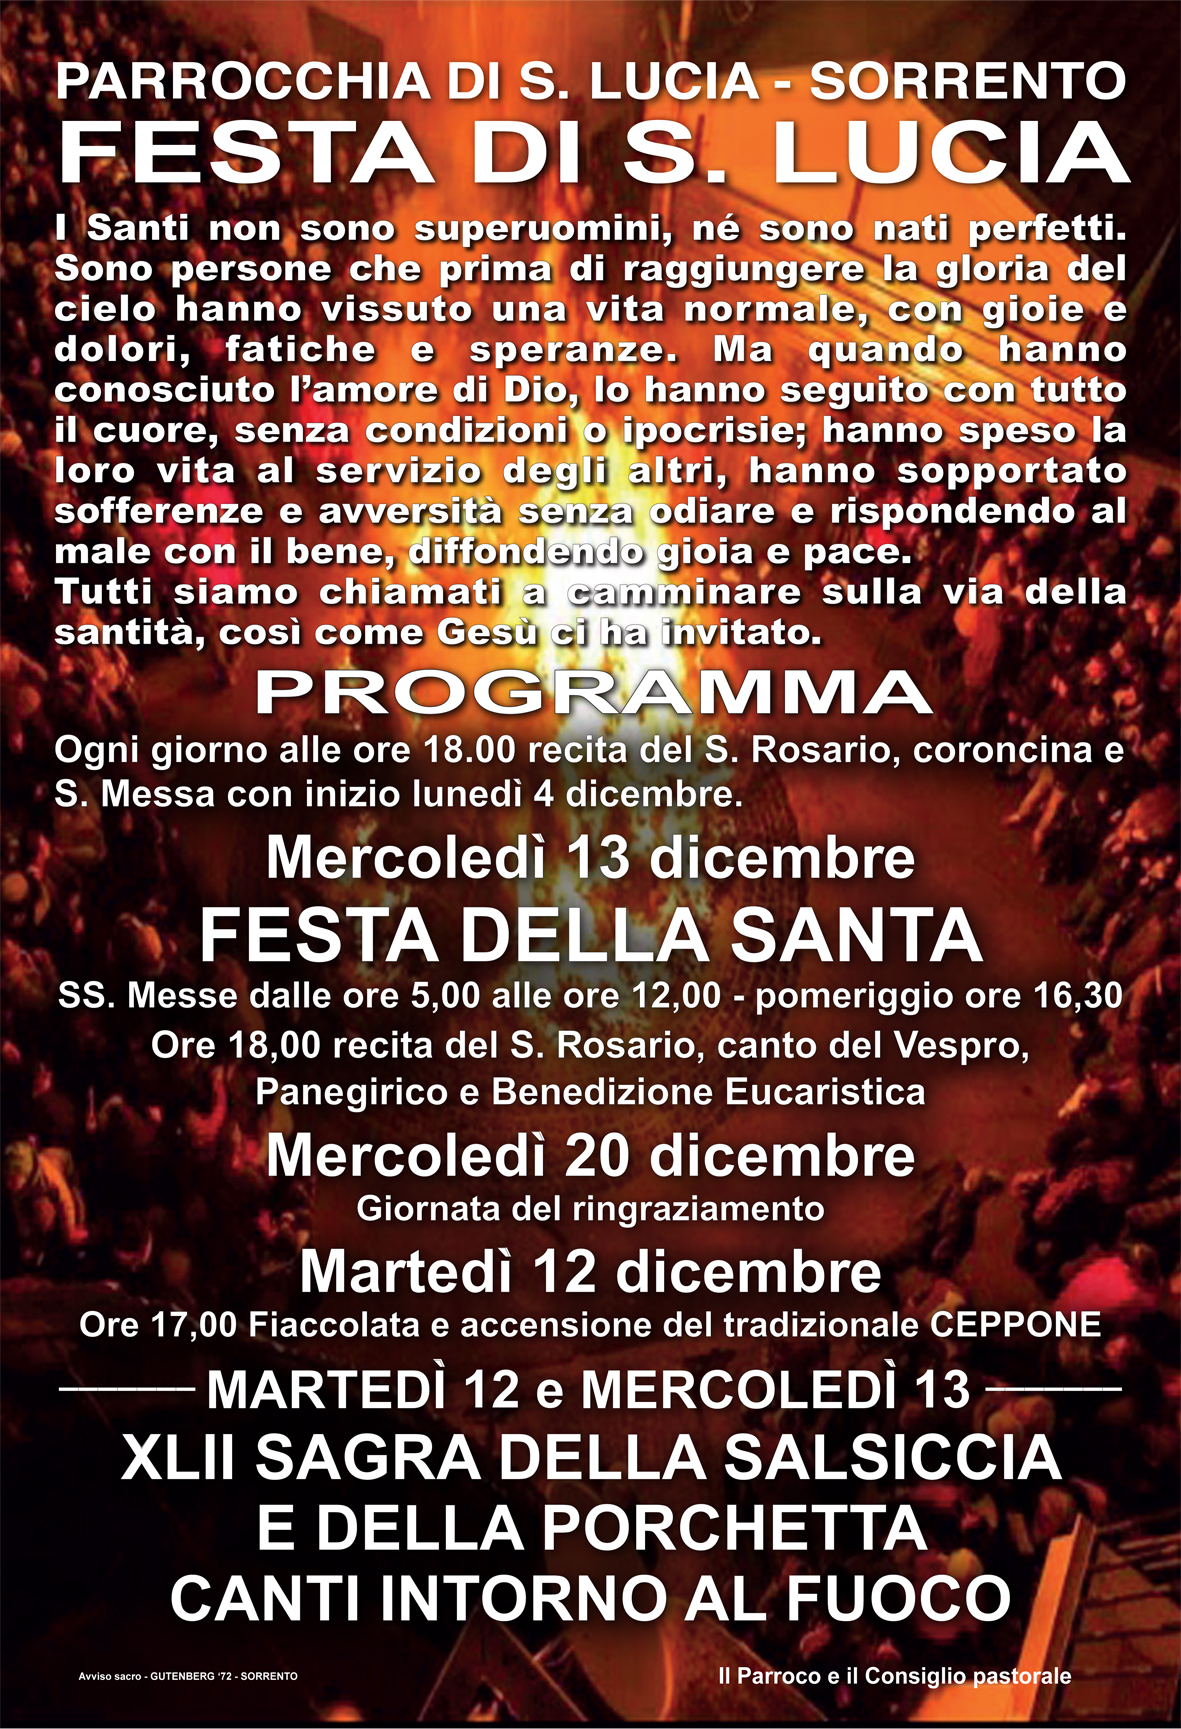 SORRENTO 13 DICEMBRE, TRADIZIONALE FESTA DI SANTA LUCIA